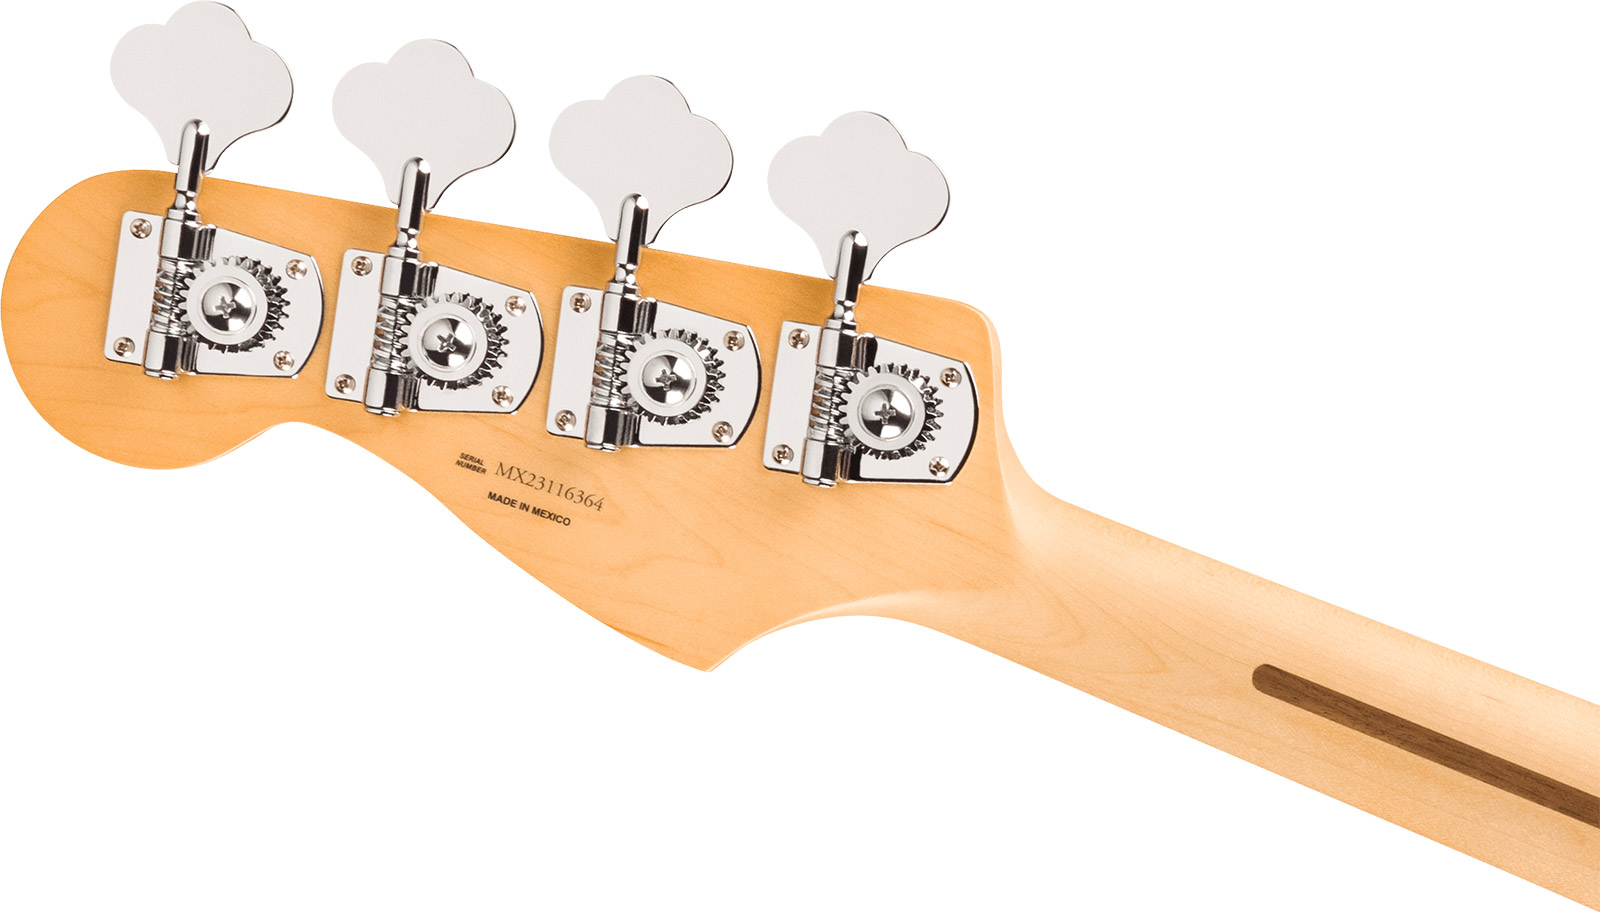 Fender Jazz Bass Player Mex Ltd Pf - Pacific Peach - Bajo eléctrico de cuerpo sólido - Variation 3